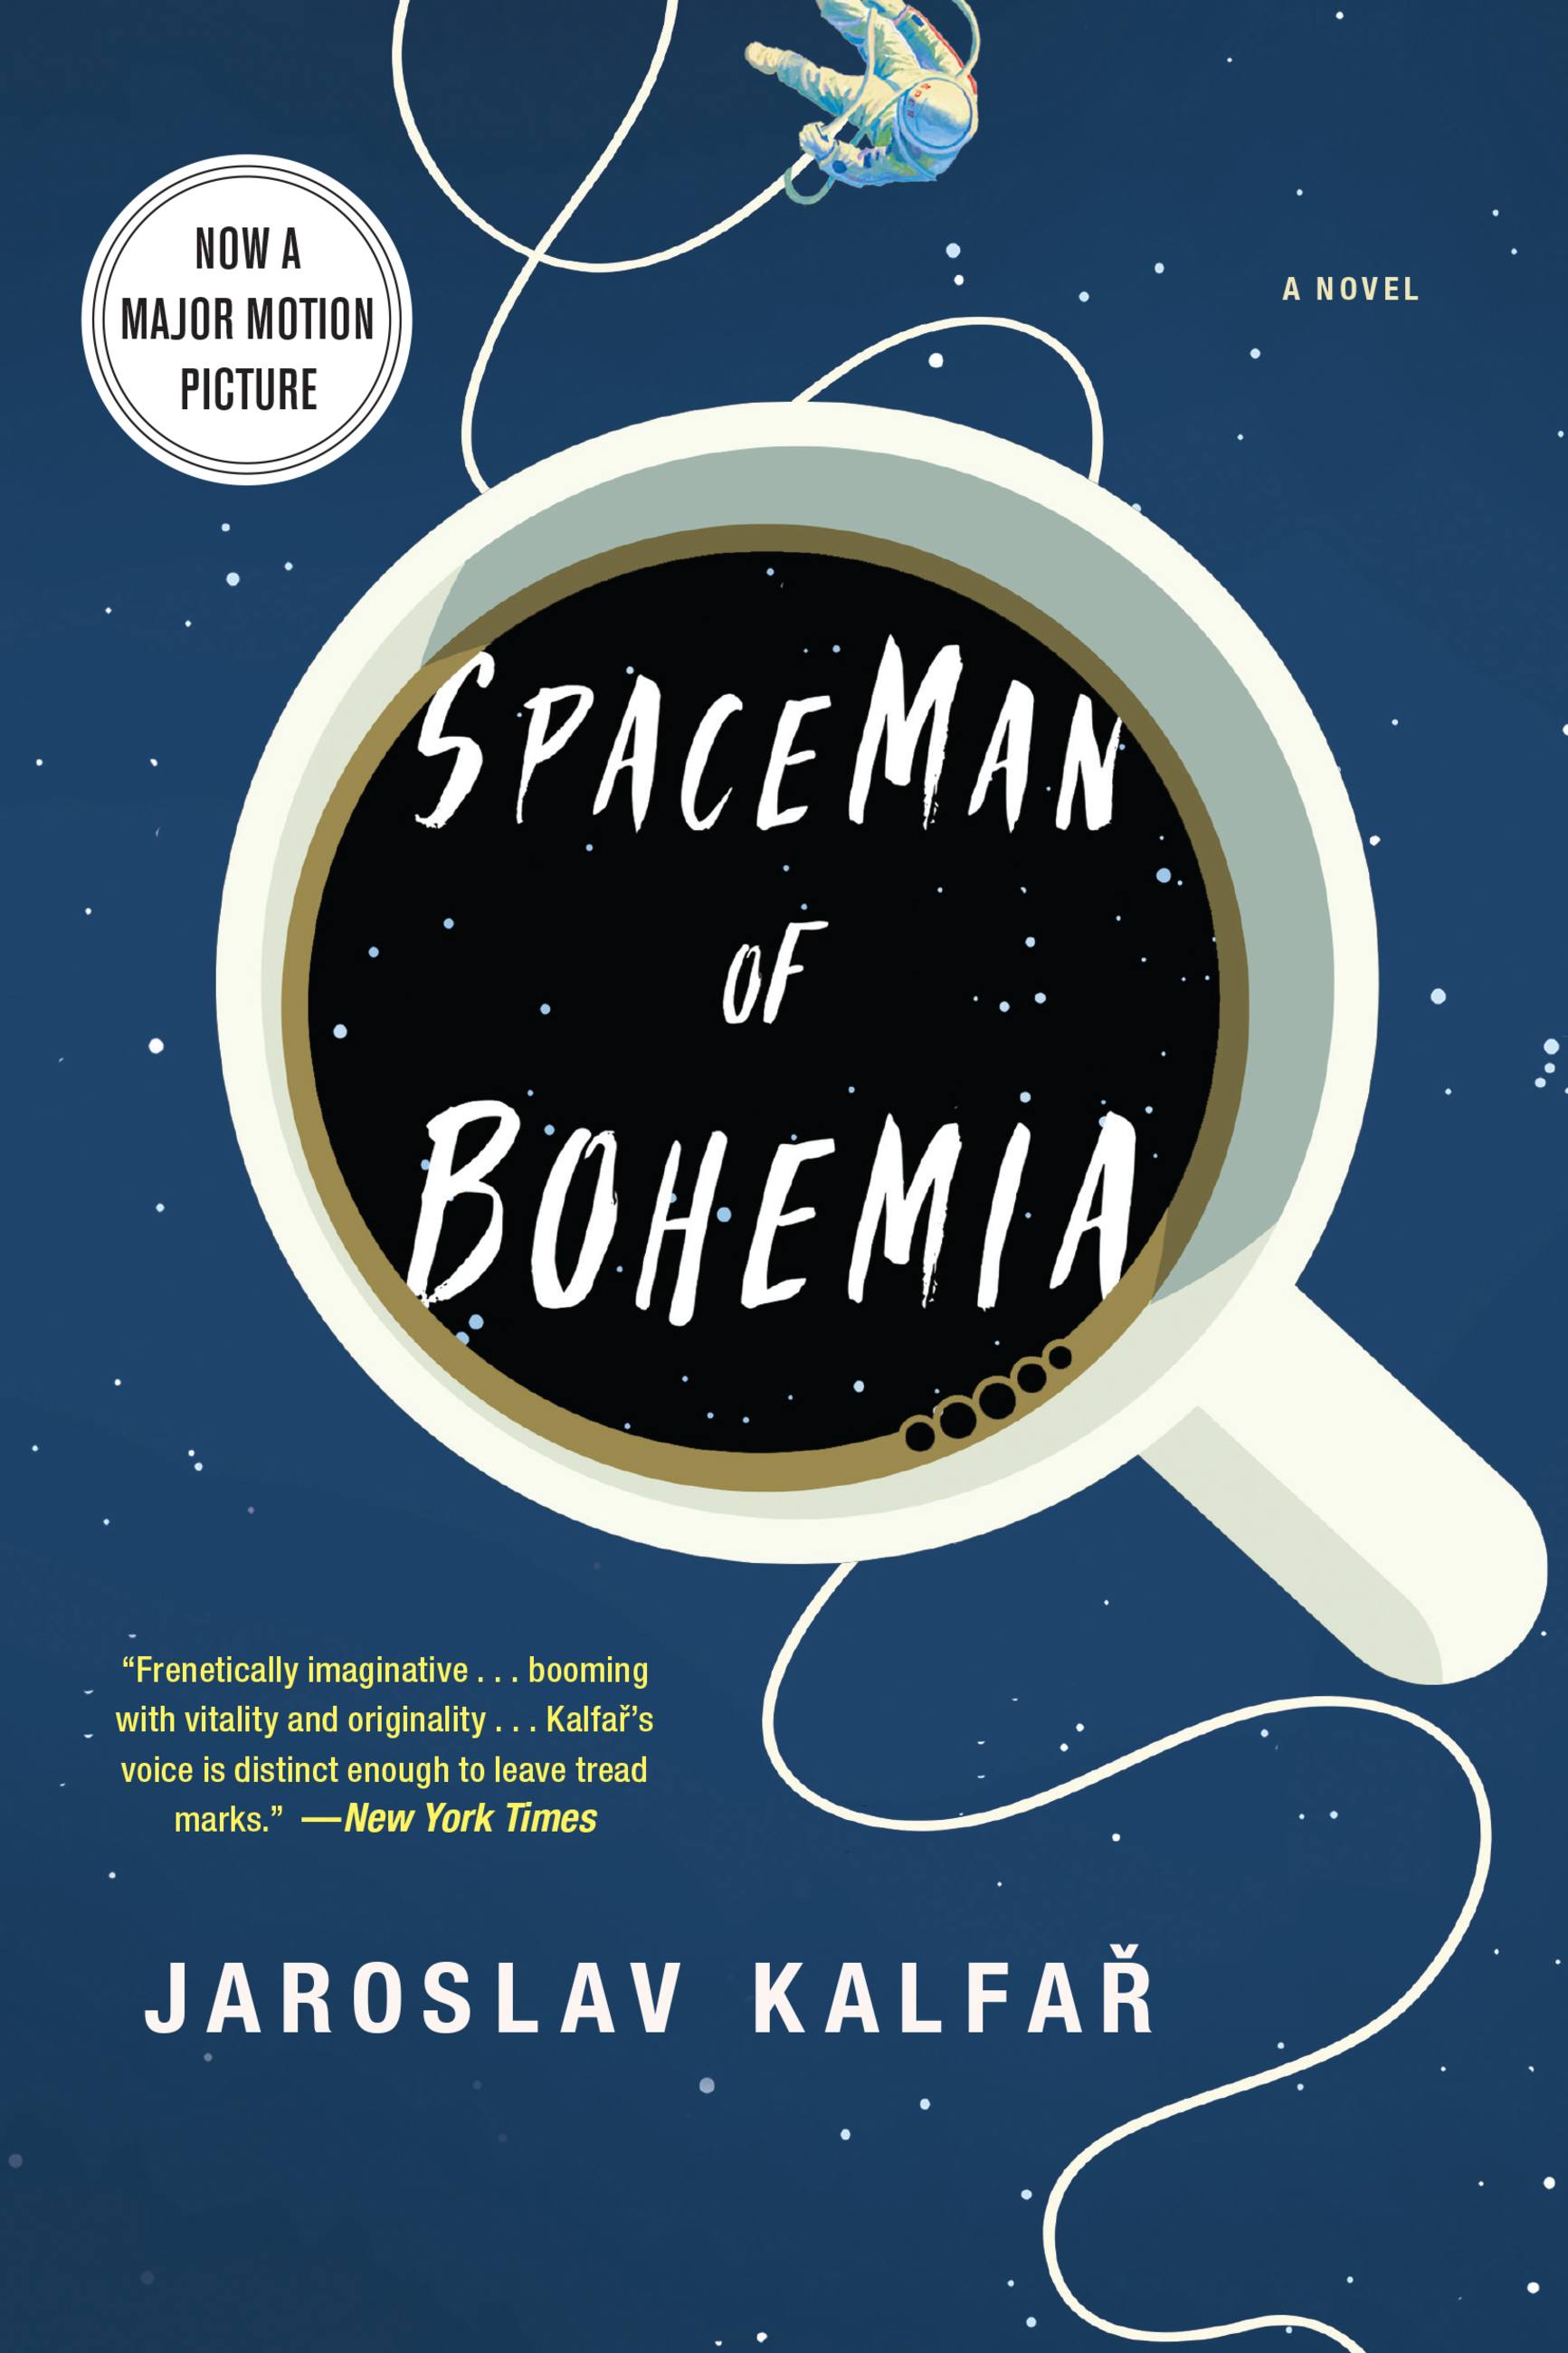 Spaceman of Bohemia by Jaroslav Kalfar Hachette Book Group